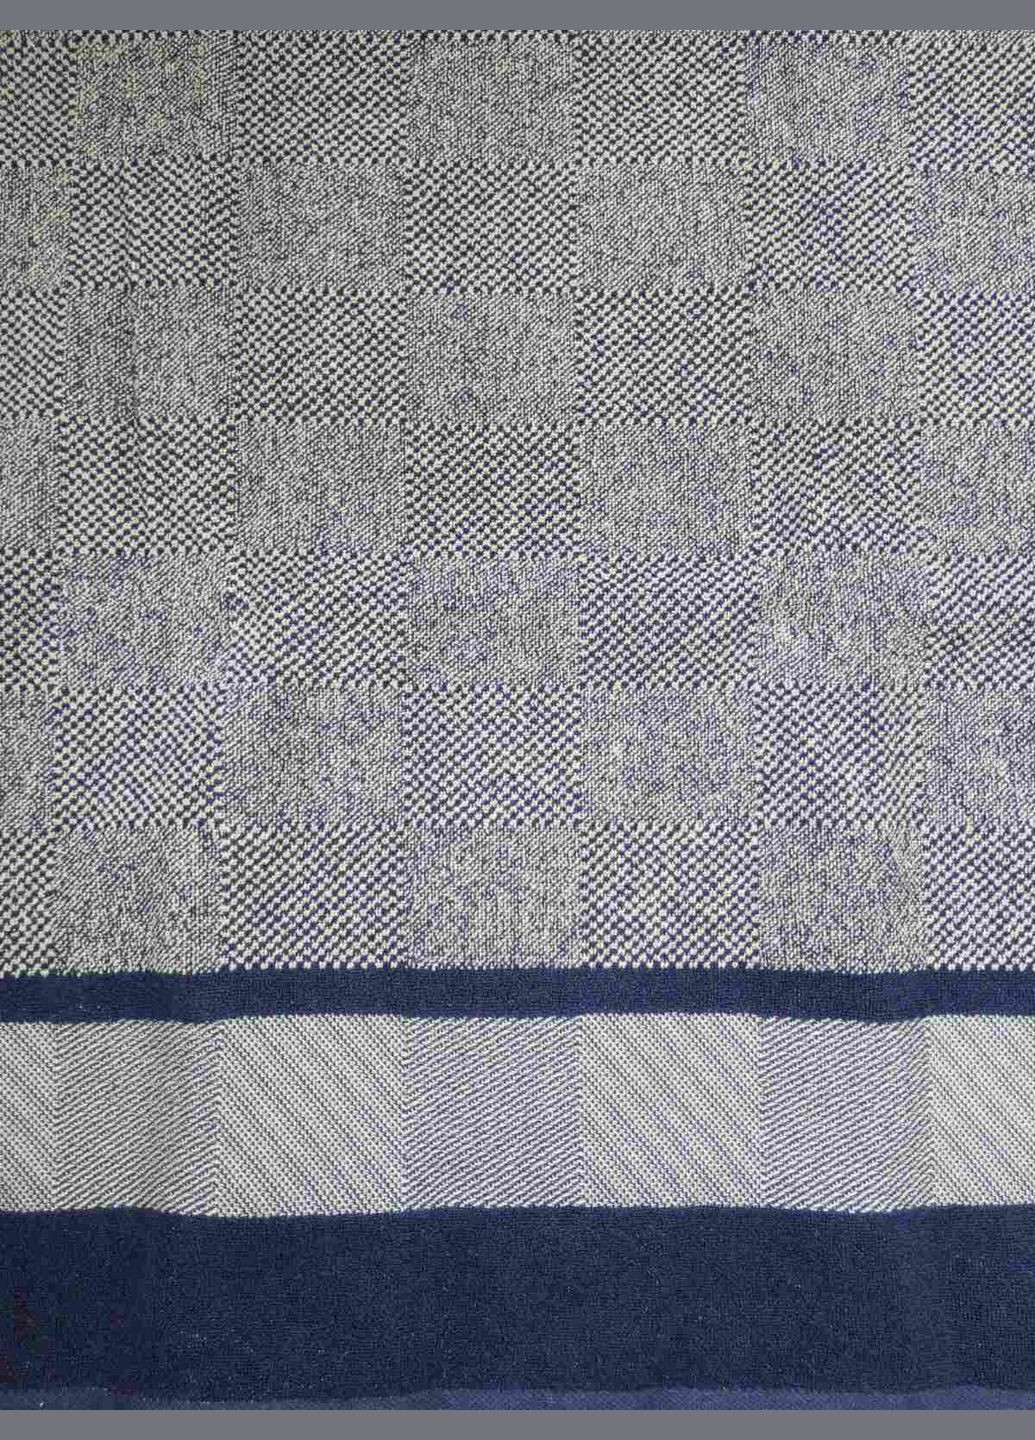 Sokuculer рушник махровий 70х140 жакардовий пістрявотканний шахи синьо сірі геометричний темно-синій виробництво - Туреччина